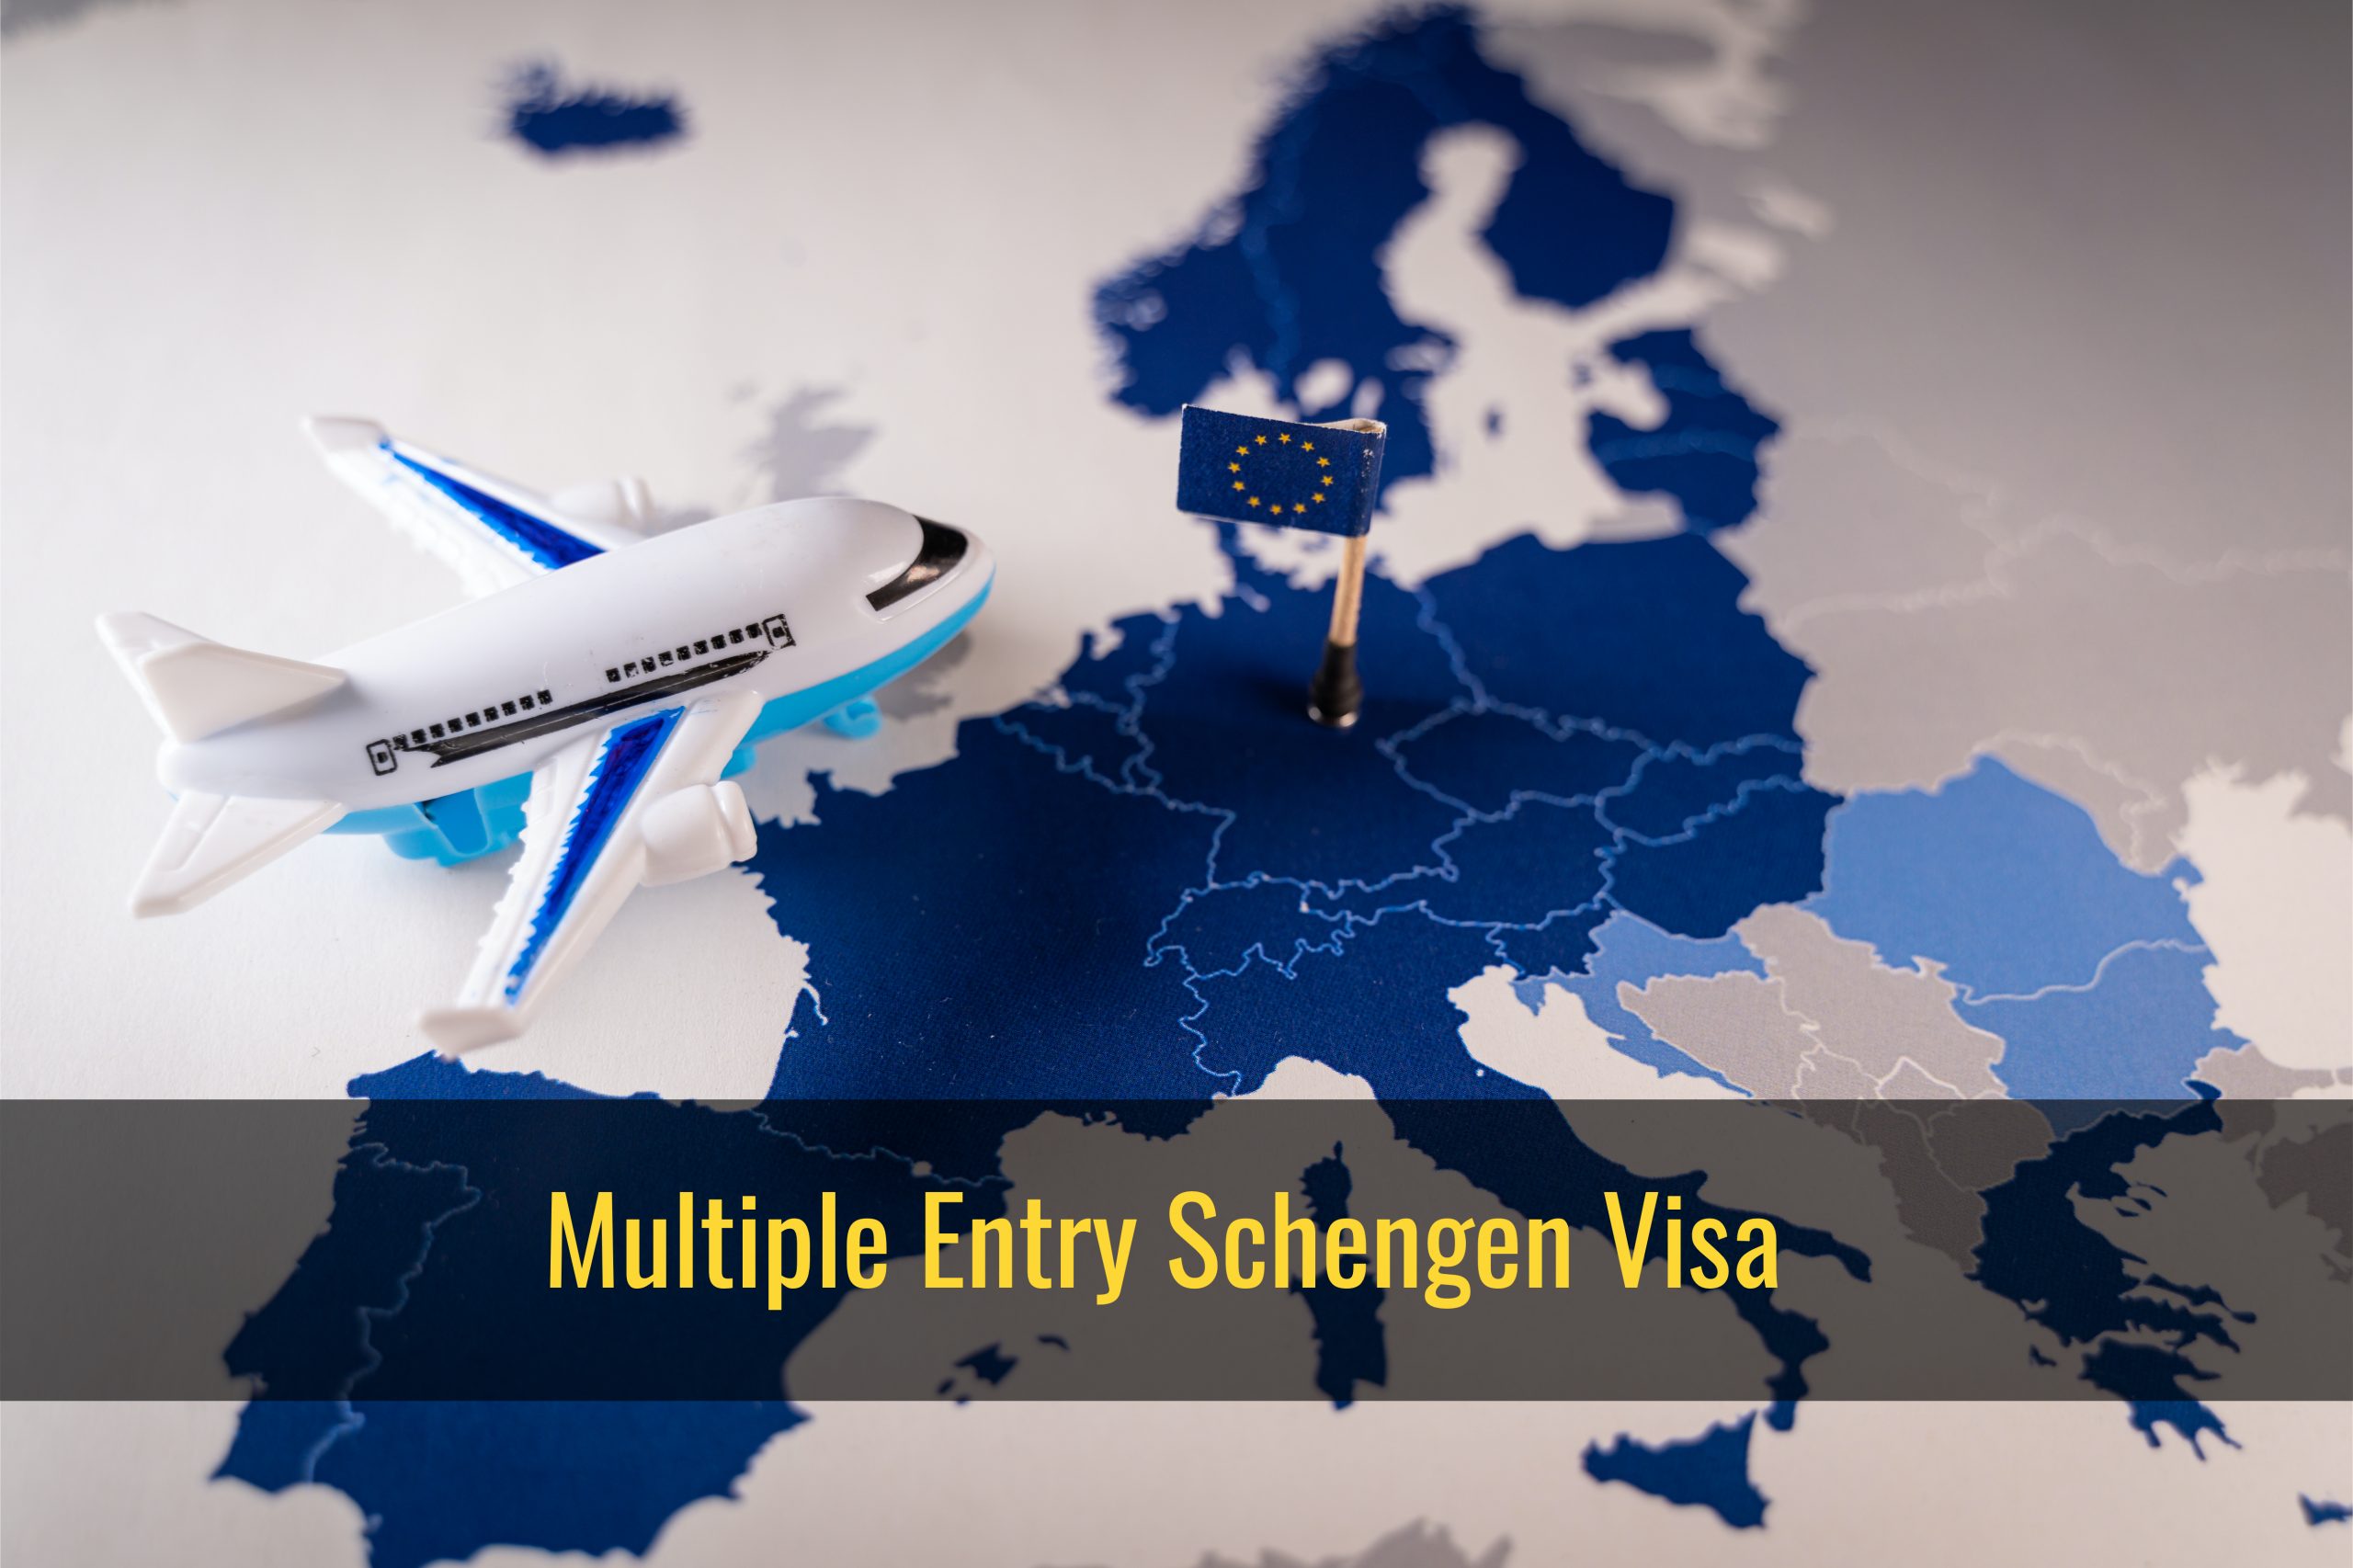 travel insurance for multiple entry schengen visa